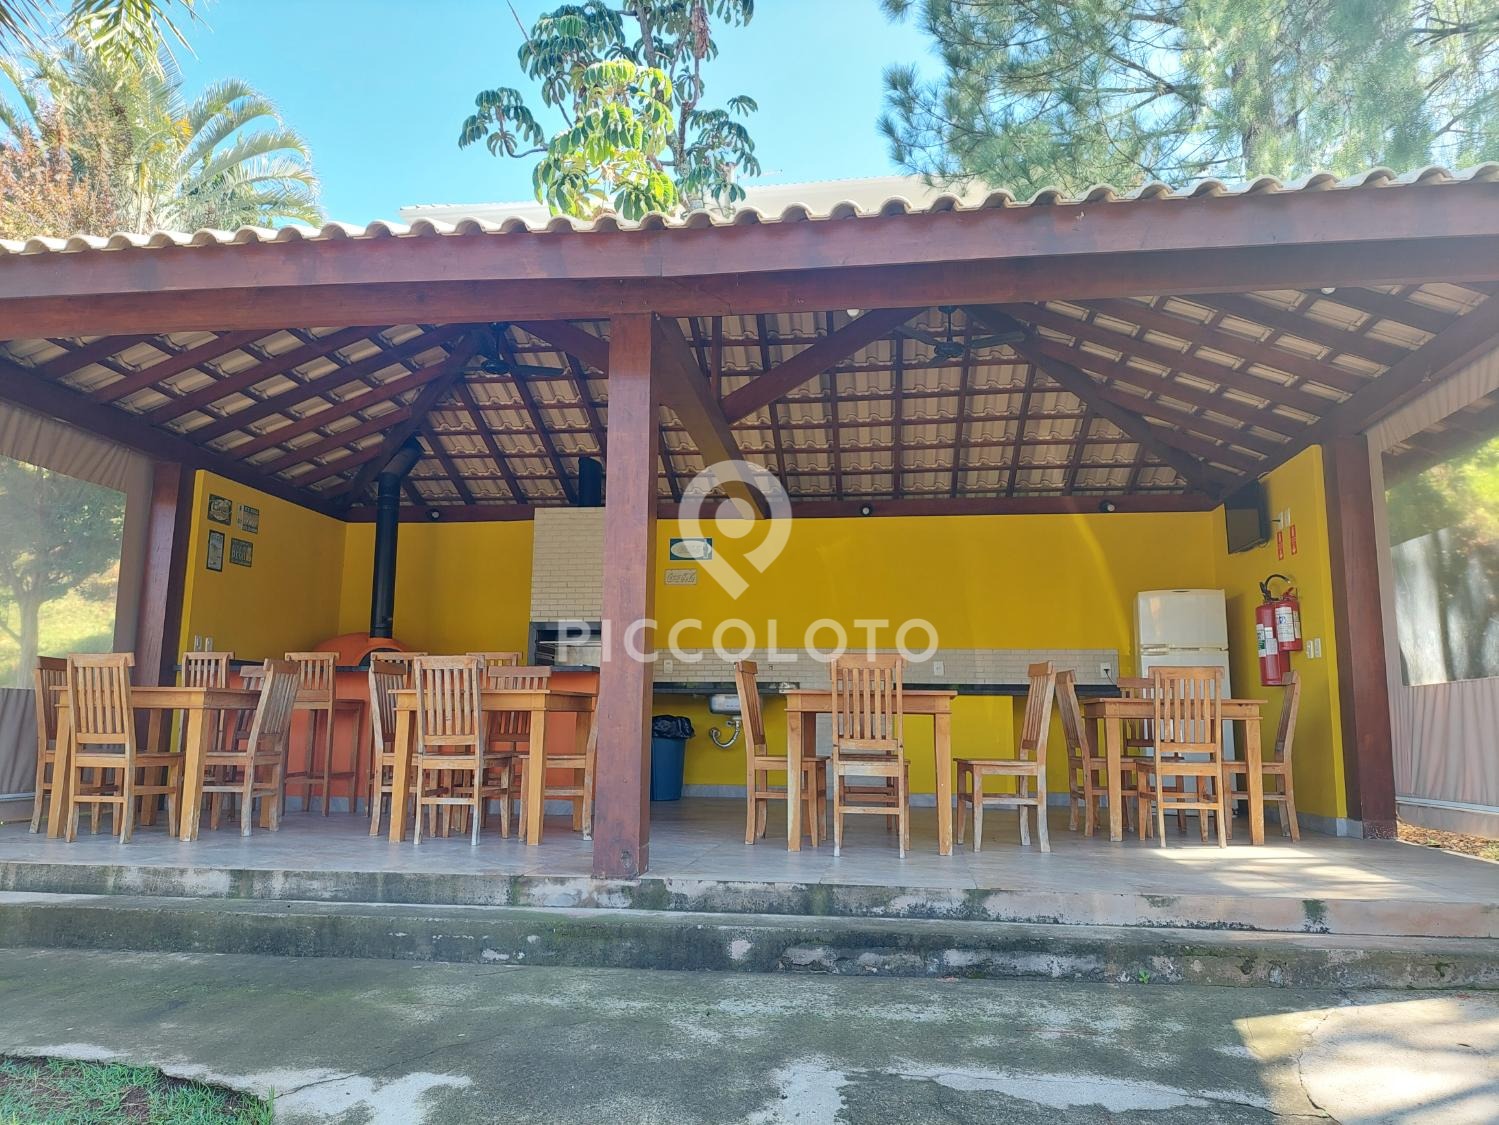 Piccoloto -Casa à venda no Loteamento Alphaville Campinas em Campinas